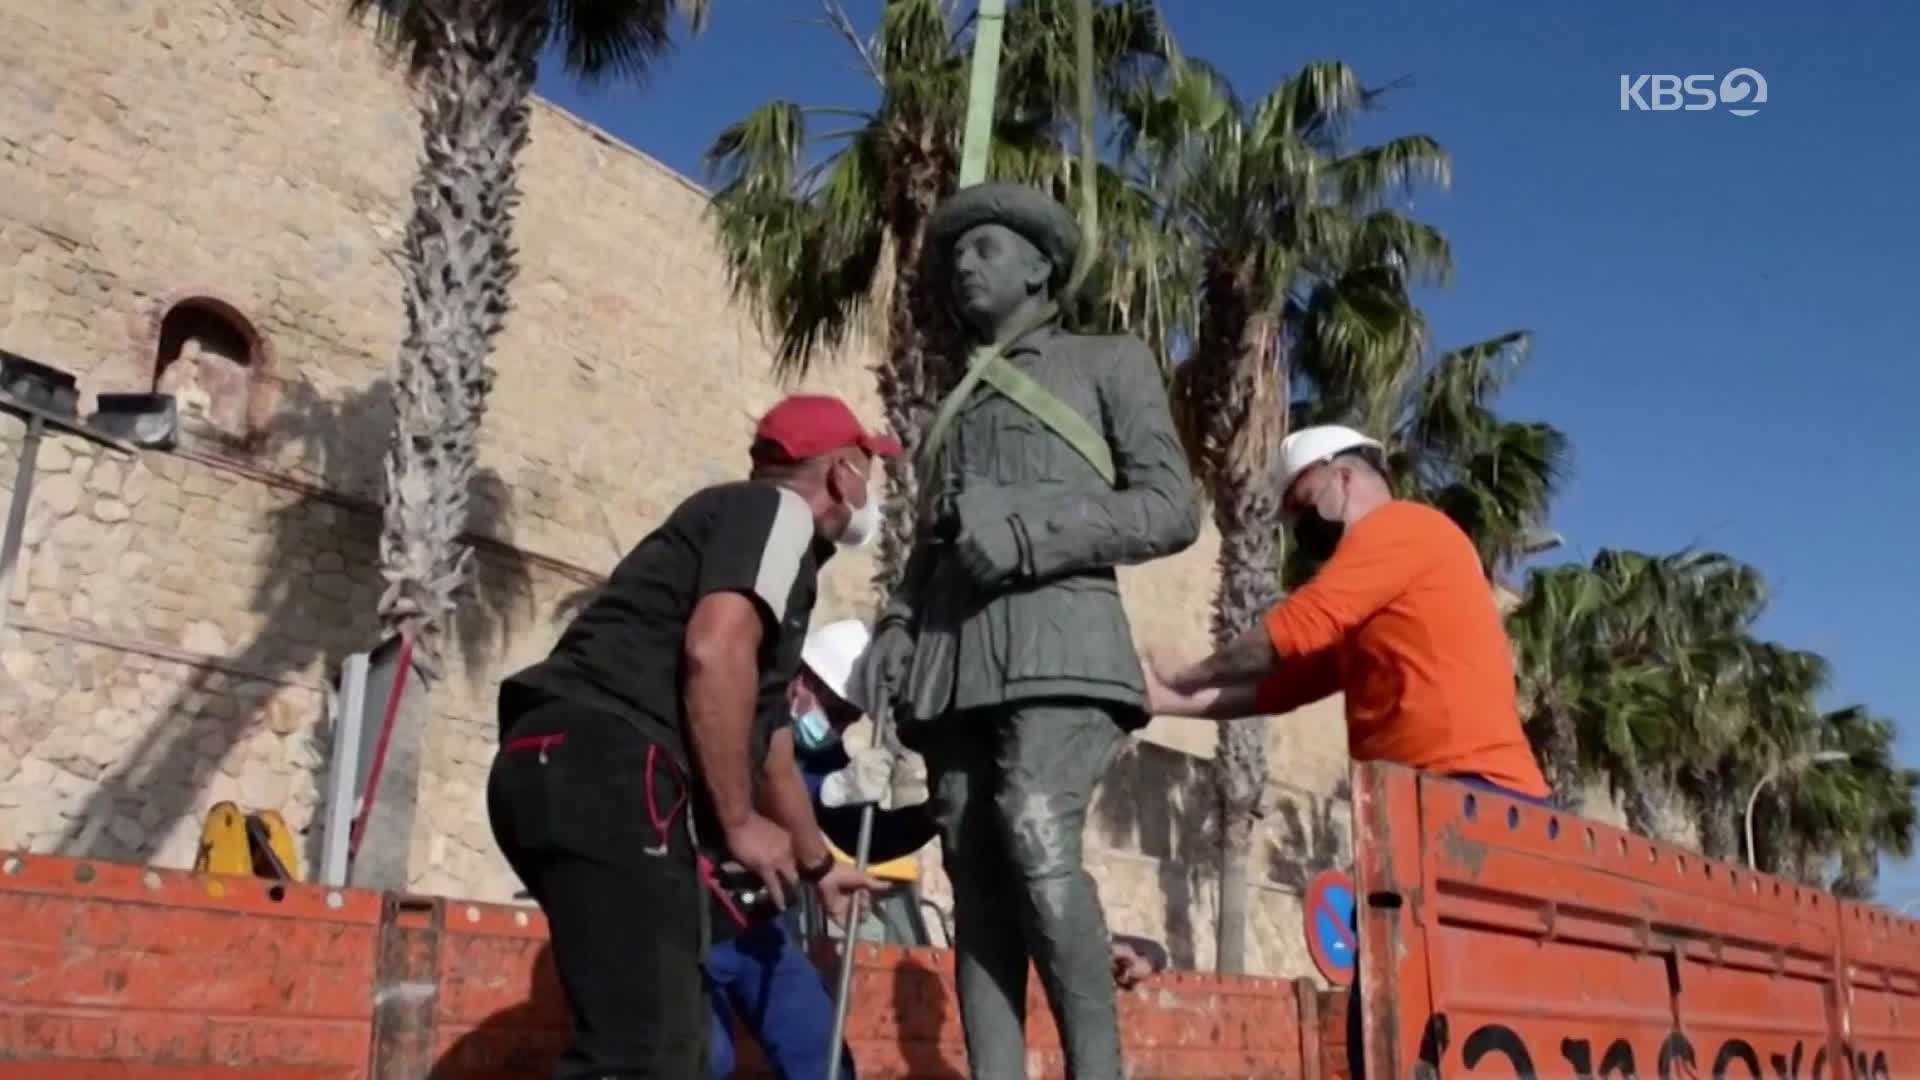 [지구촌 포토] 스페인 독재자 프랑코 마지막 동상 철거